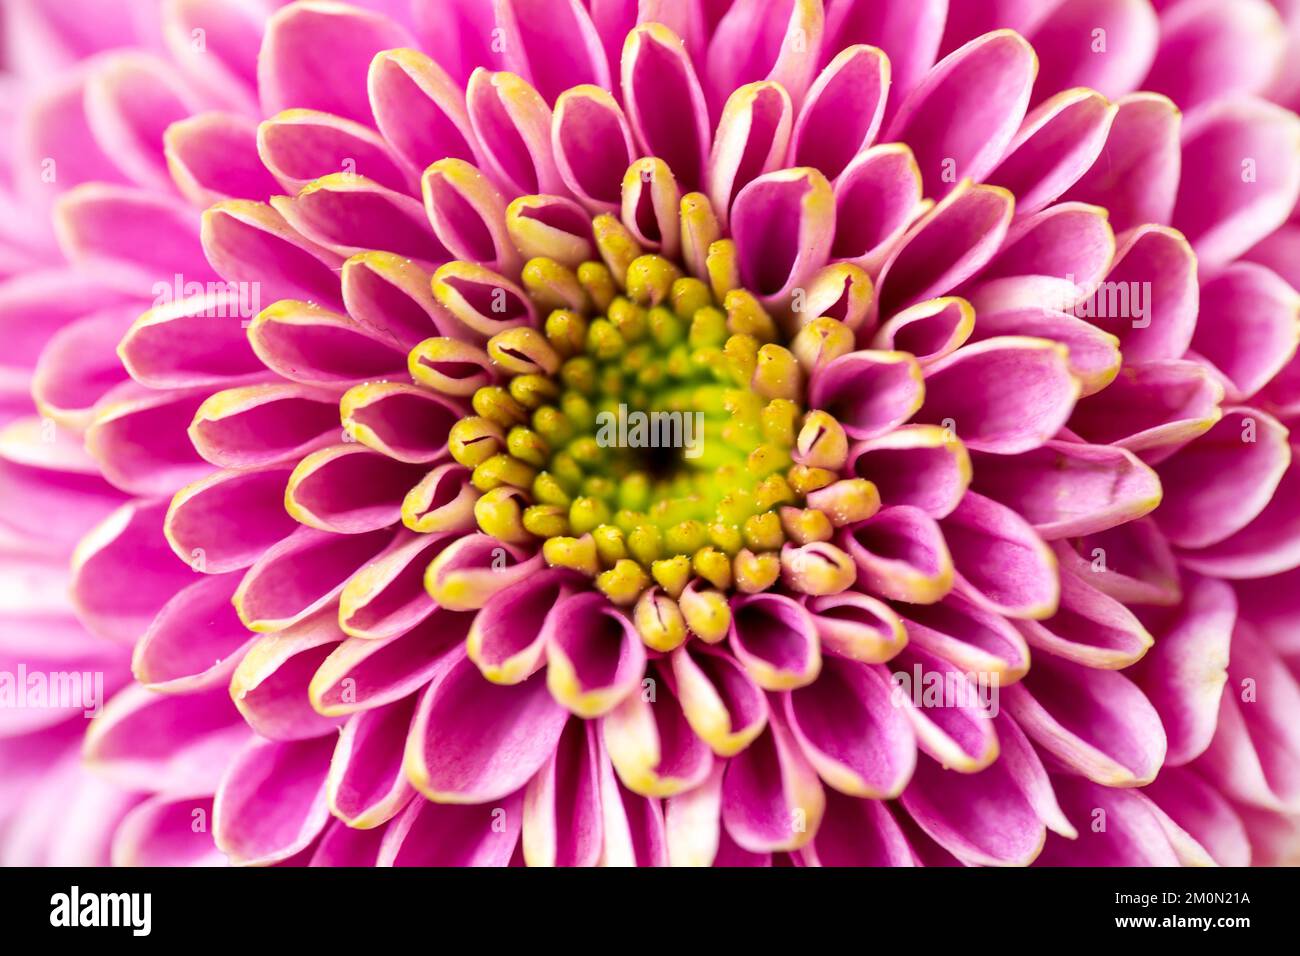 Gros plan d'une fleur de dalhia rose, fond abstrait symétrique floral Banque D'Images